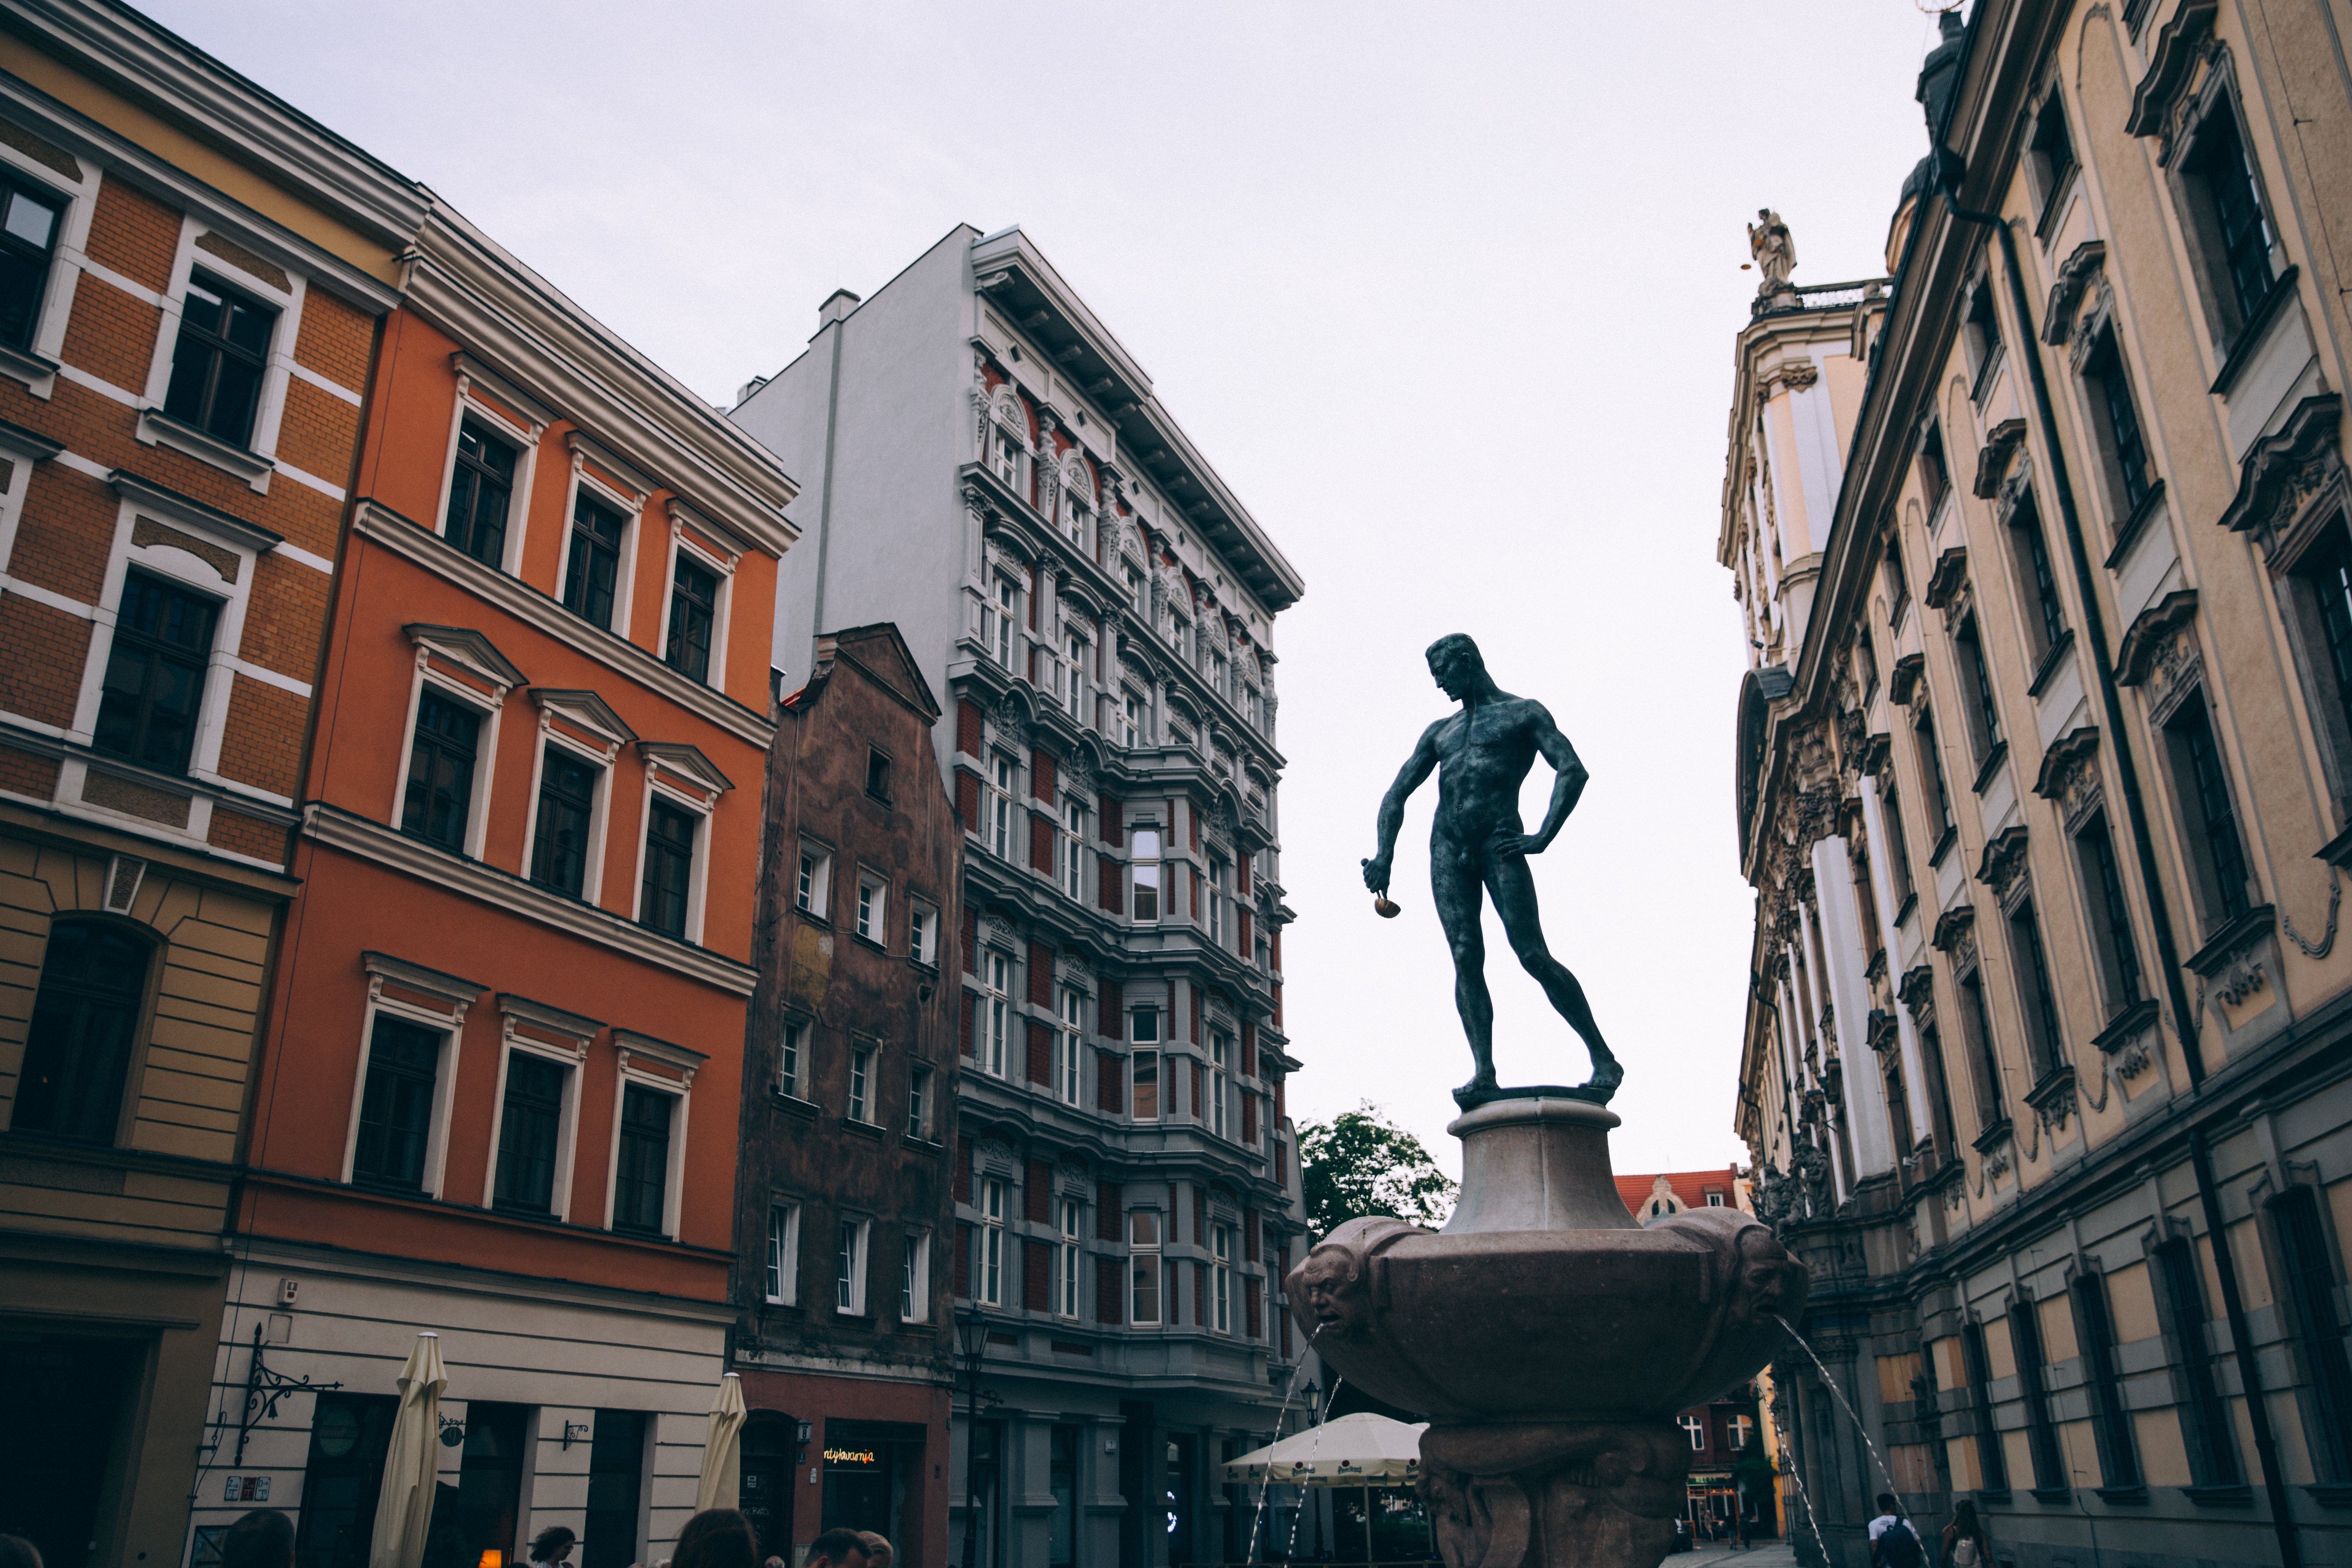 Una estatua de un hombre sosteniendo una cuchara en una foto de la plaza de la ciudad 